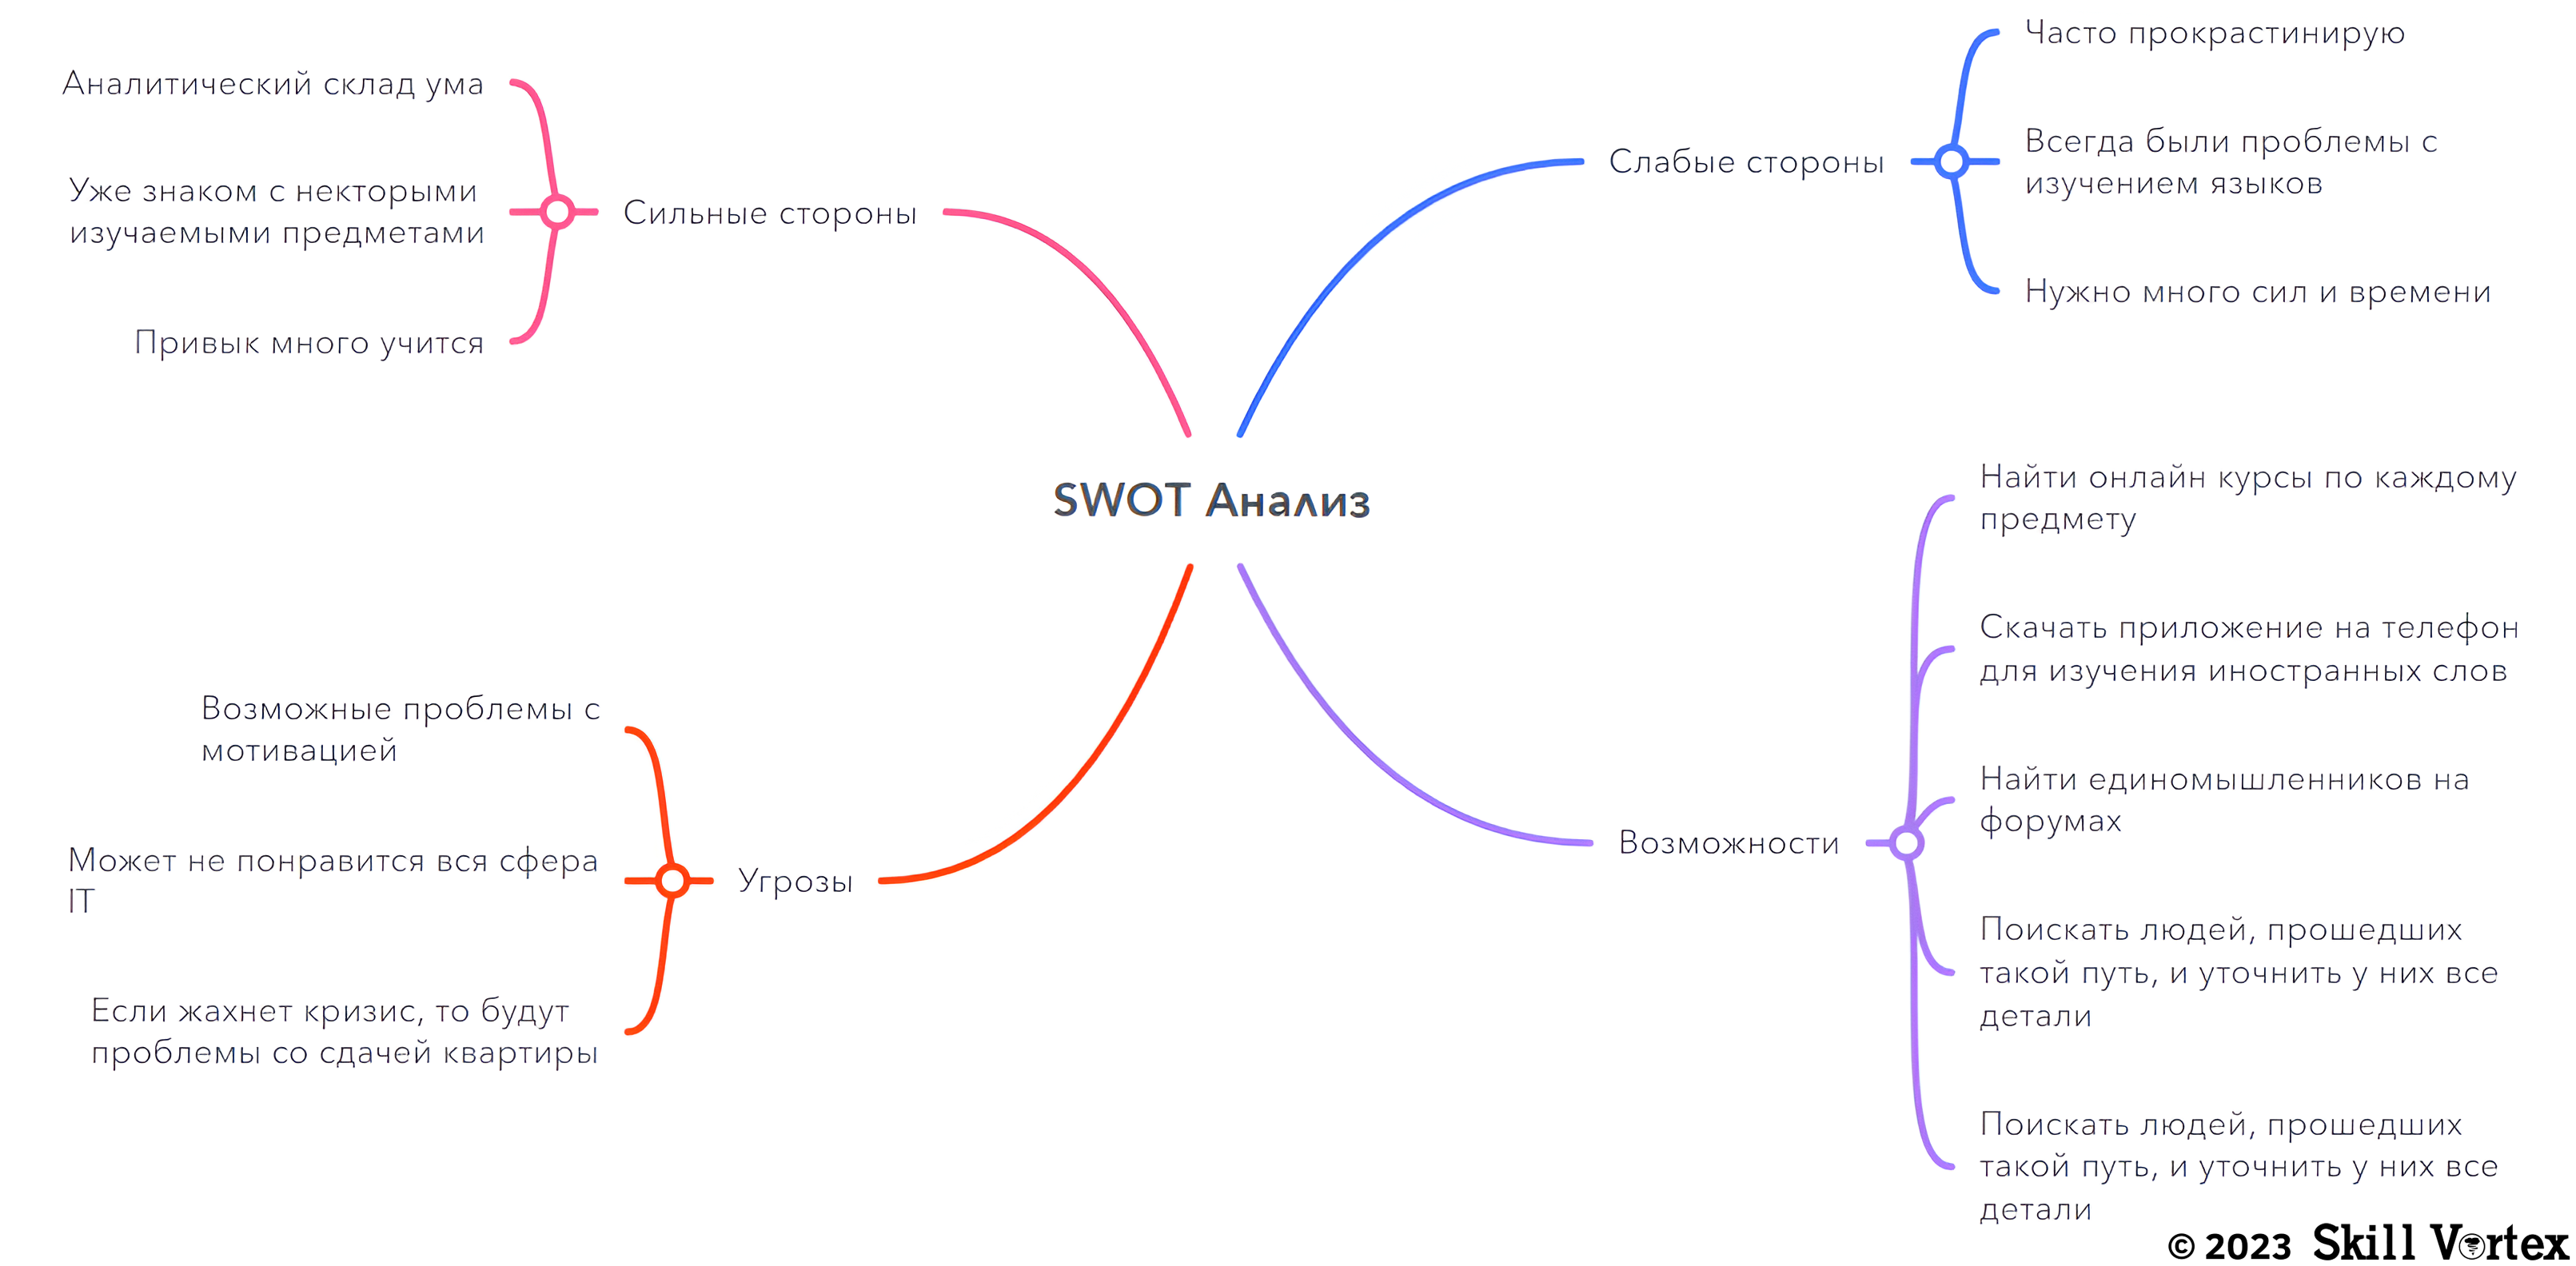 SWOT анализ на примере планирования обучения